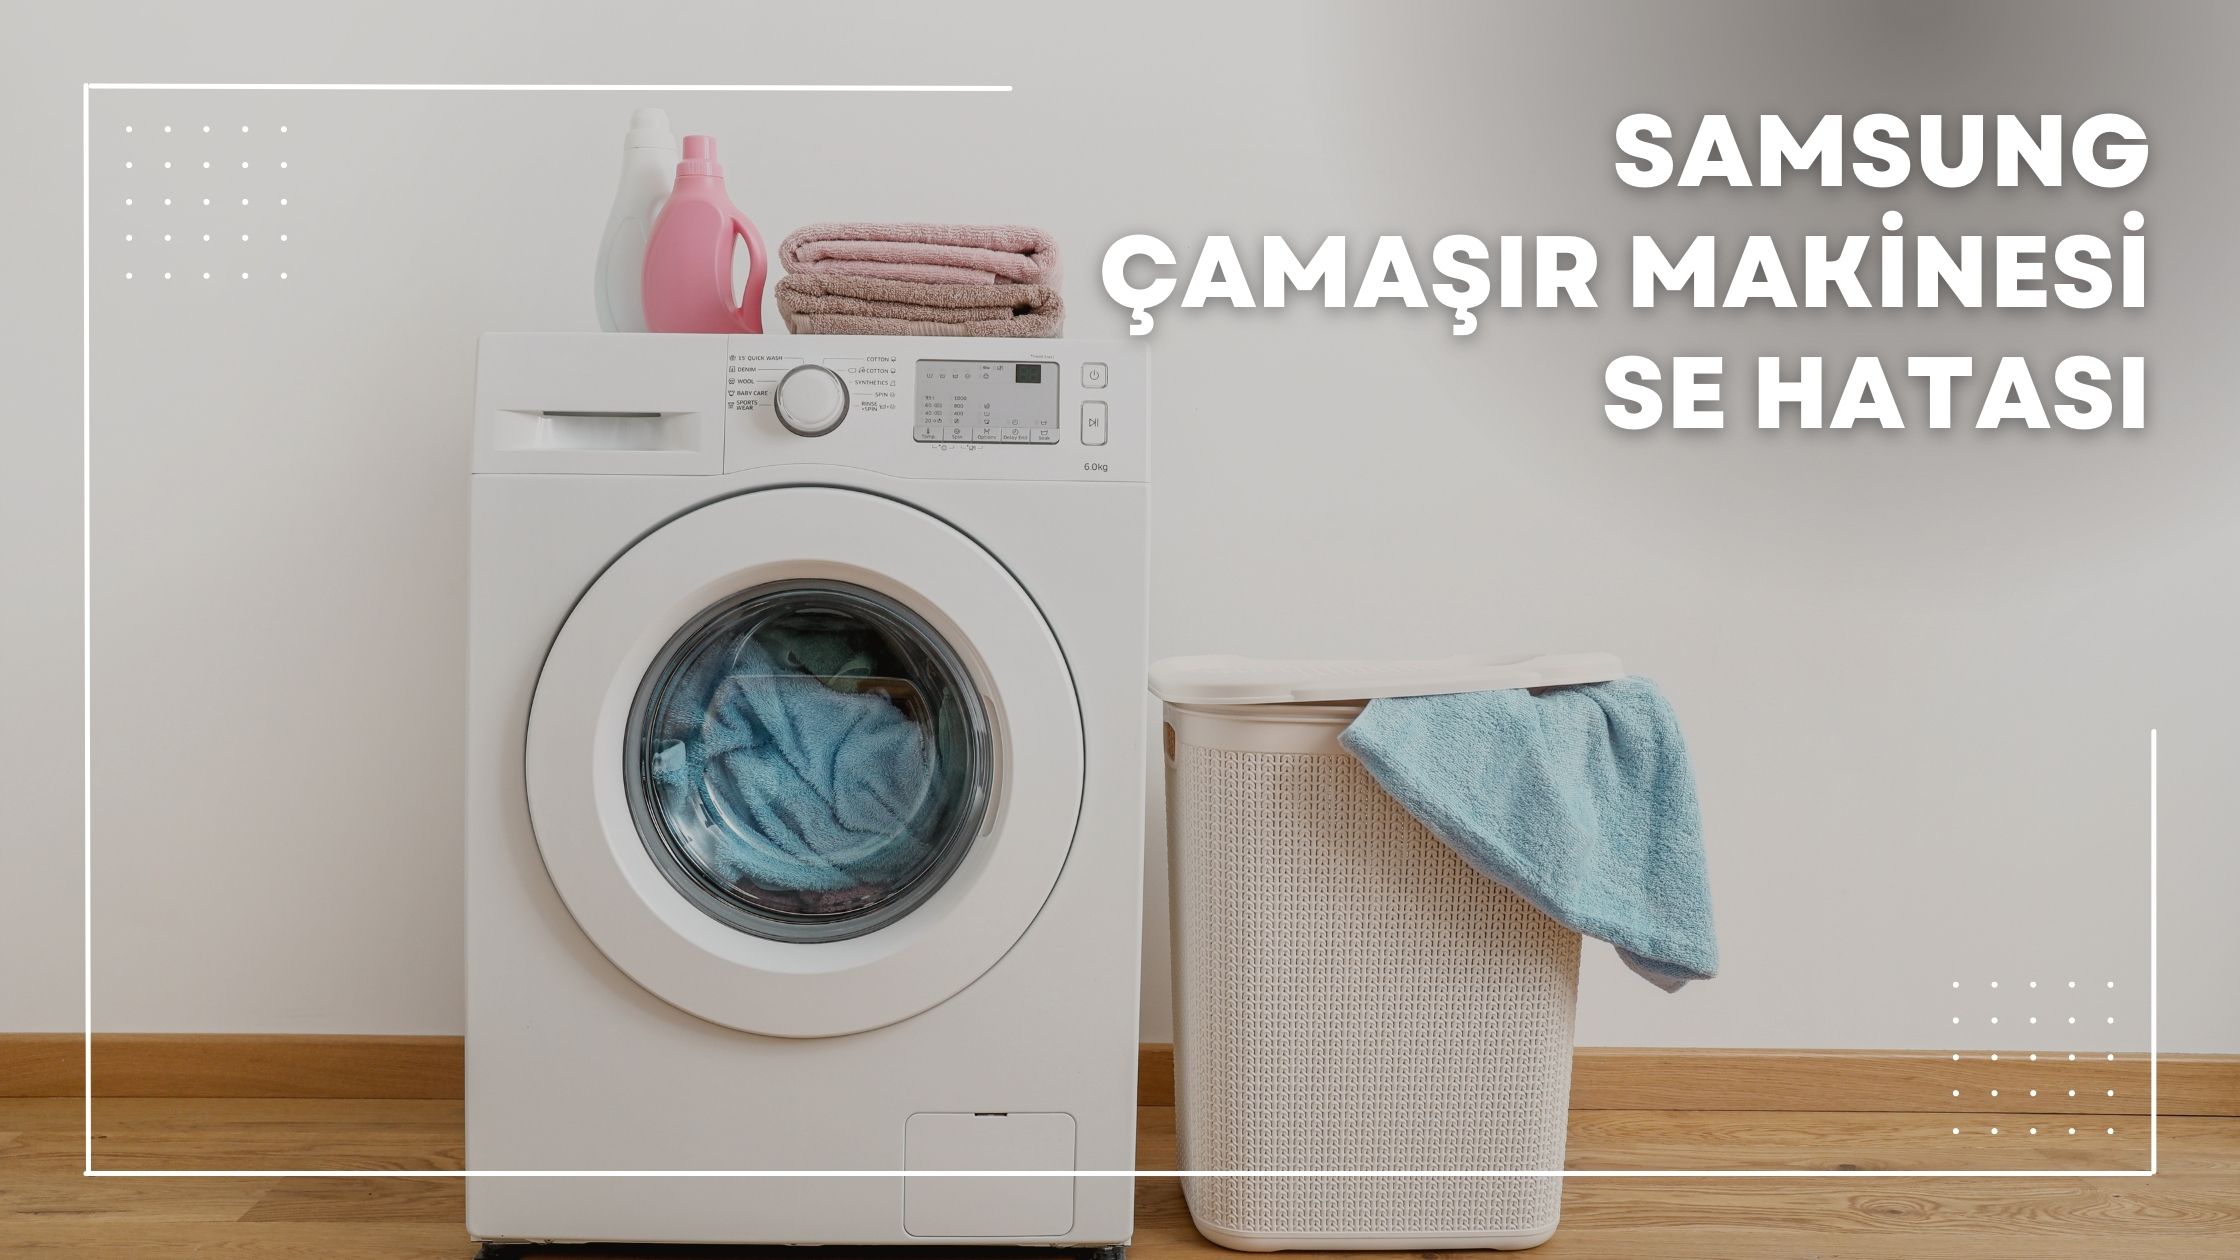 Samsung Çamaşır Makinesi Se Hatası